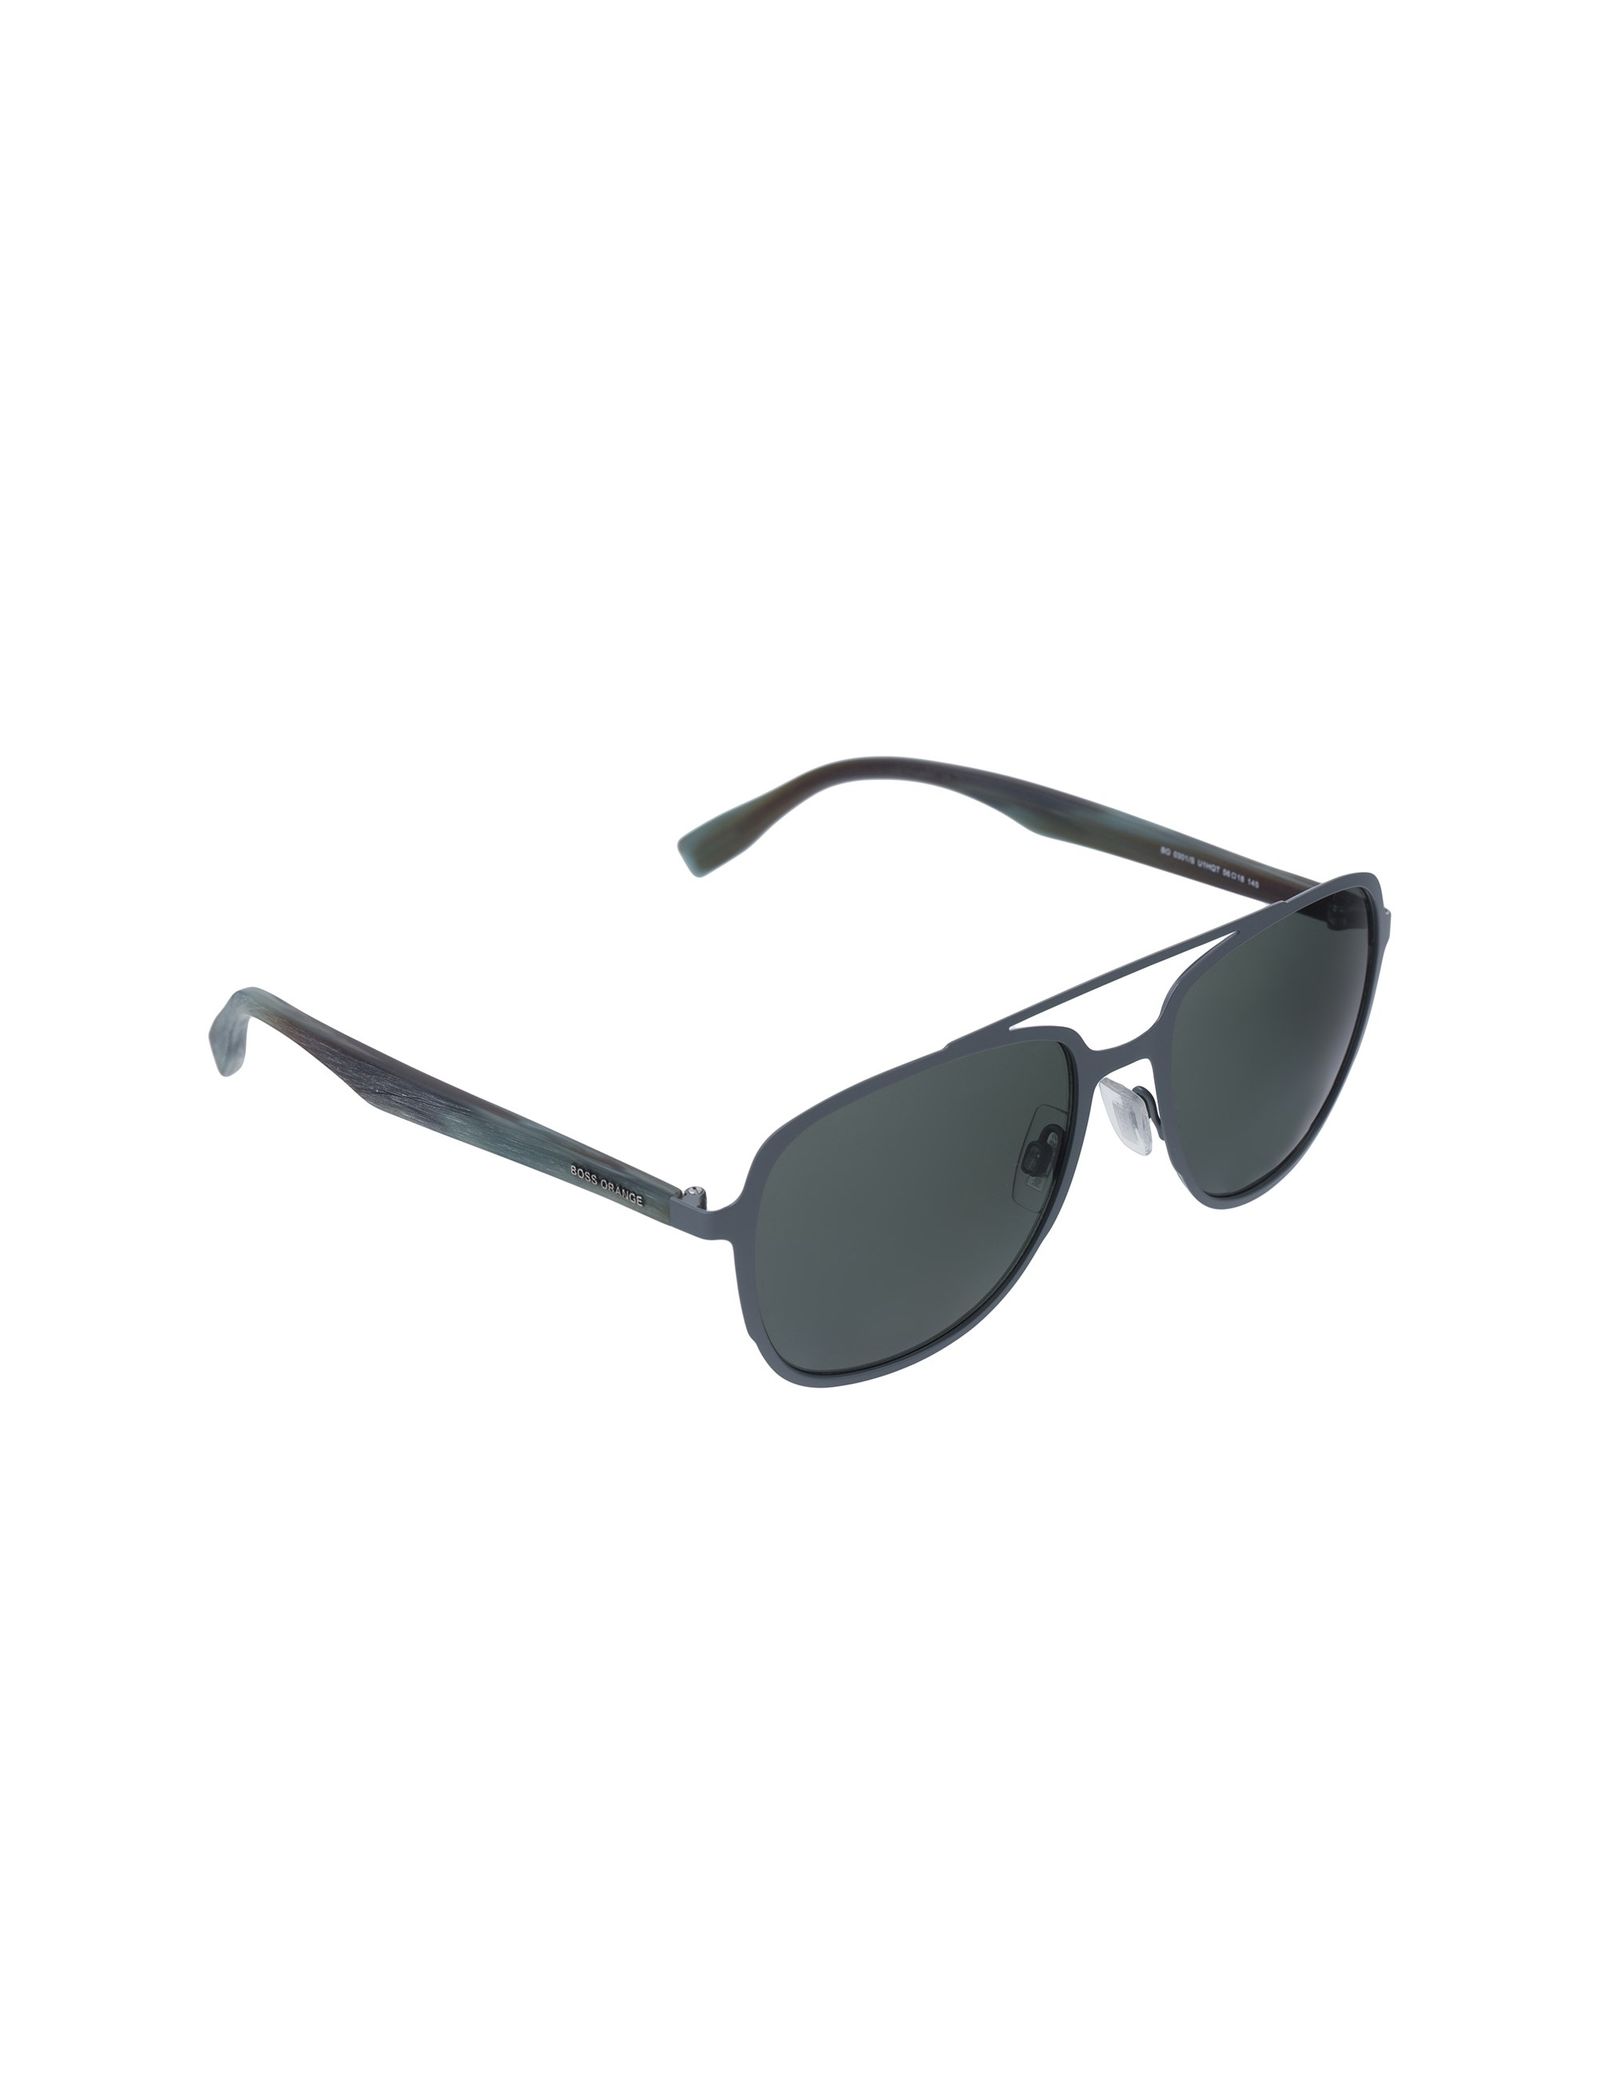 عینک آفتابی خلبانی مردانه - باس اورنج - سبز - 5